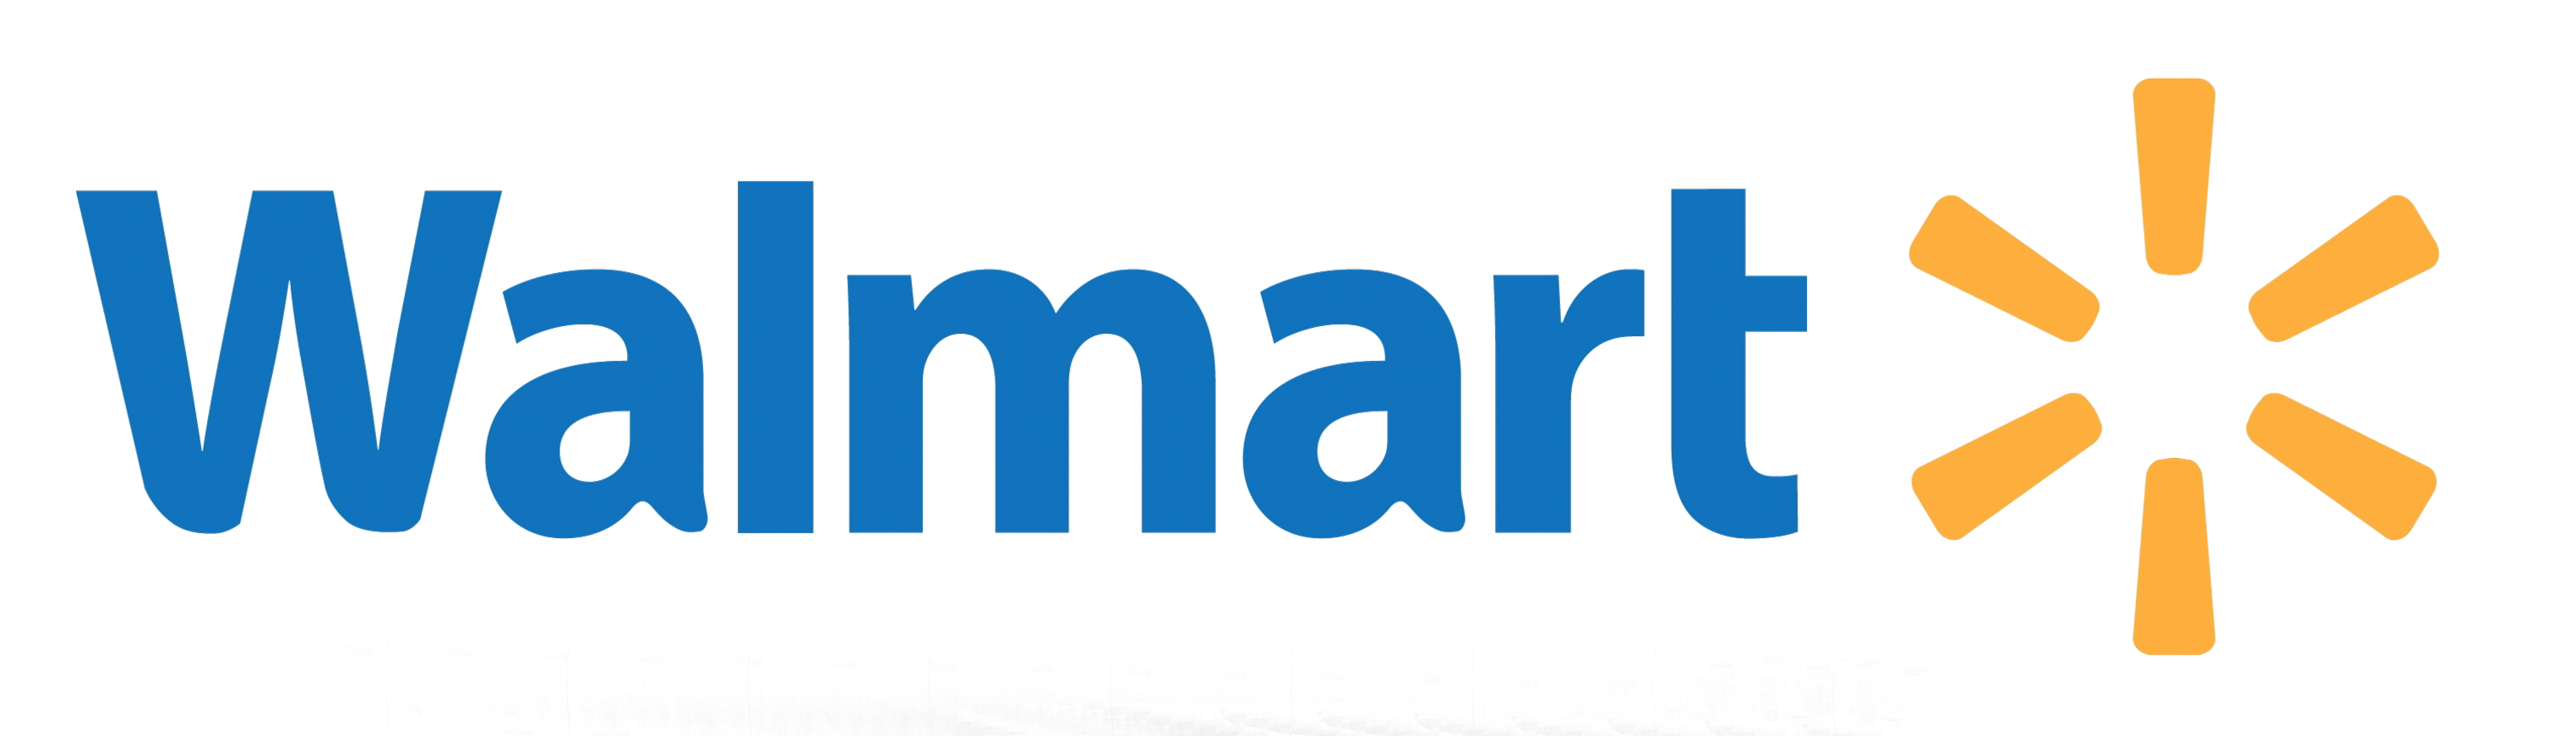 Walmart Logo PNG Image.